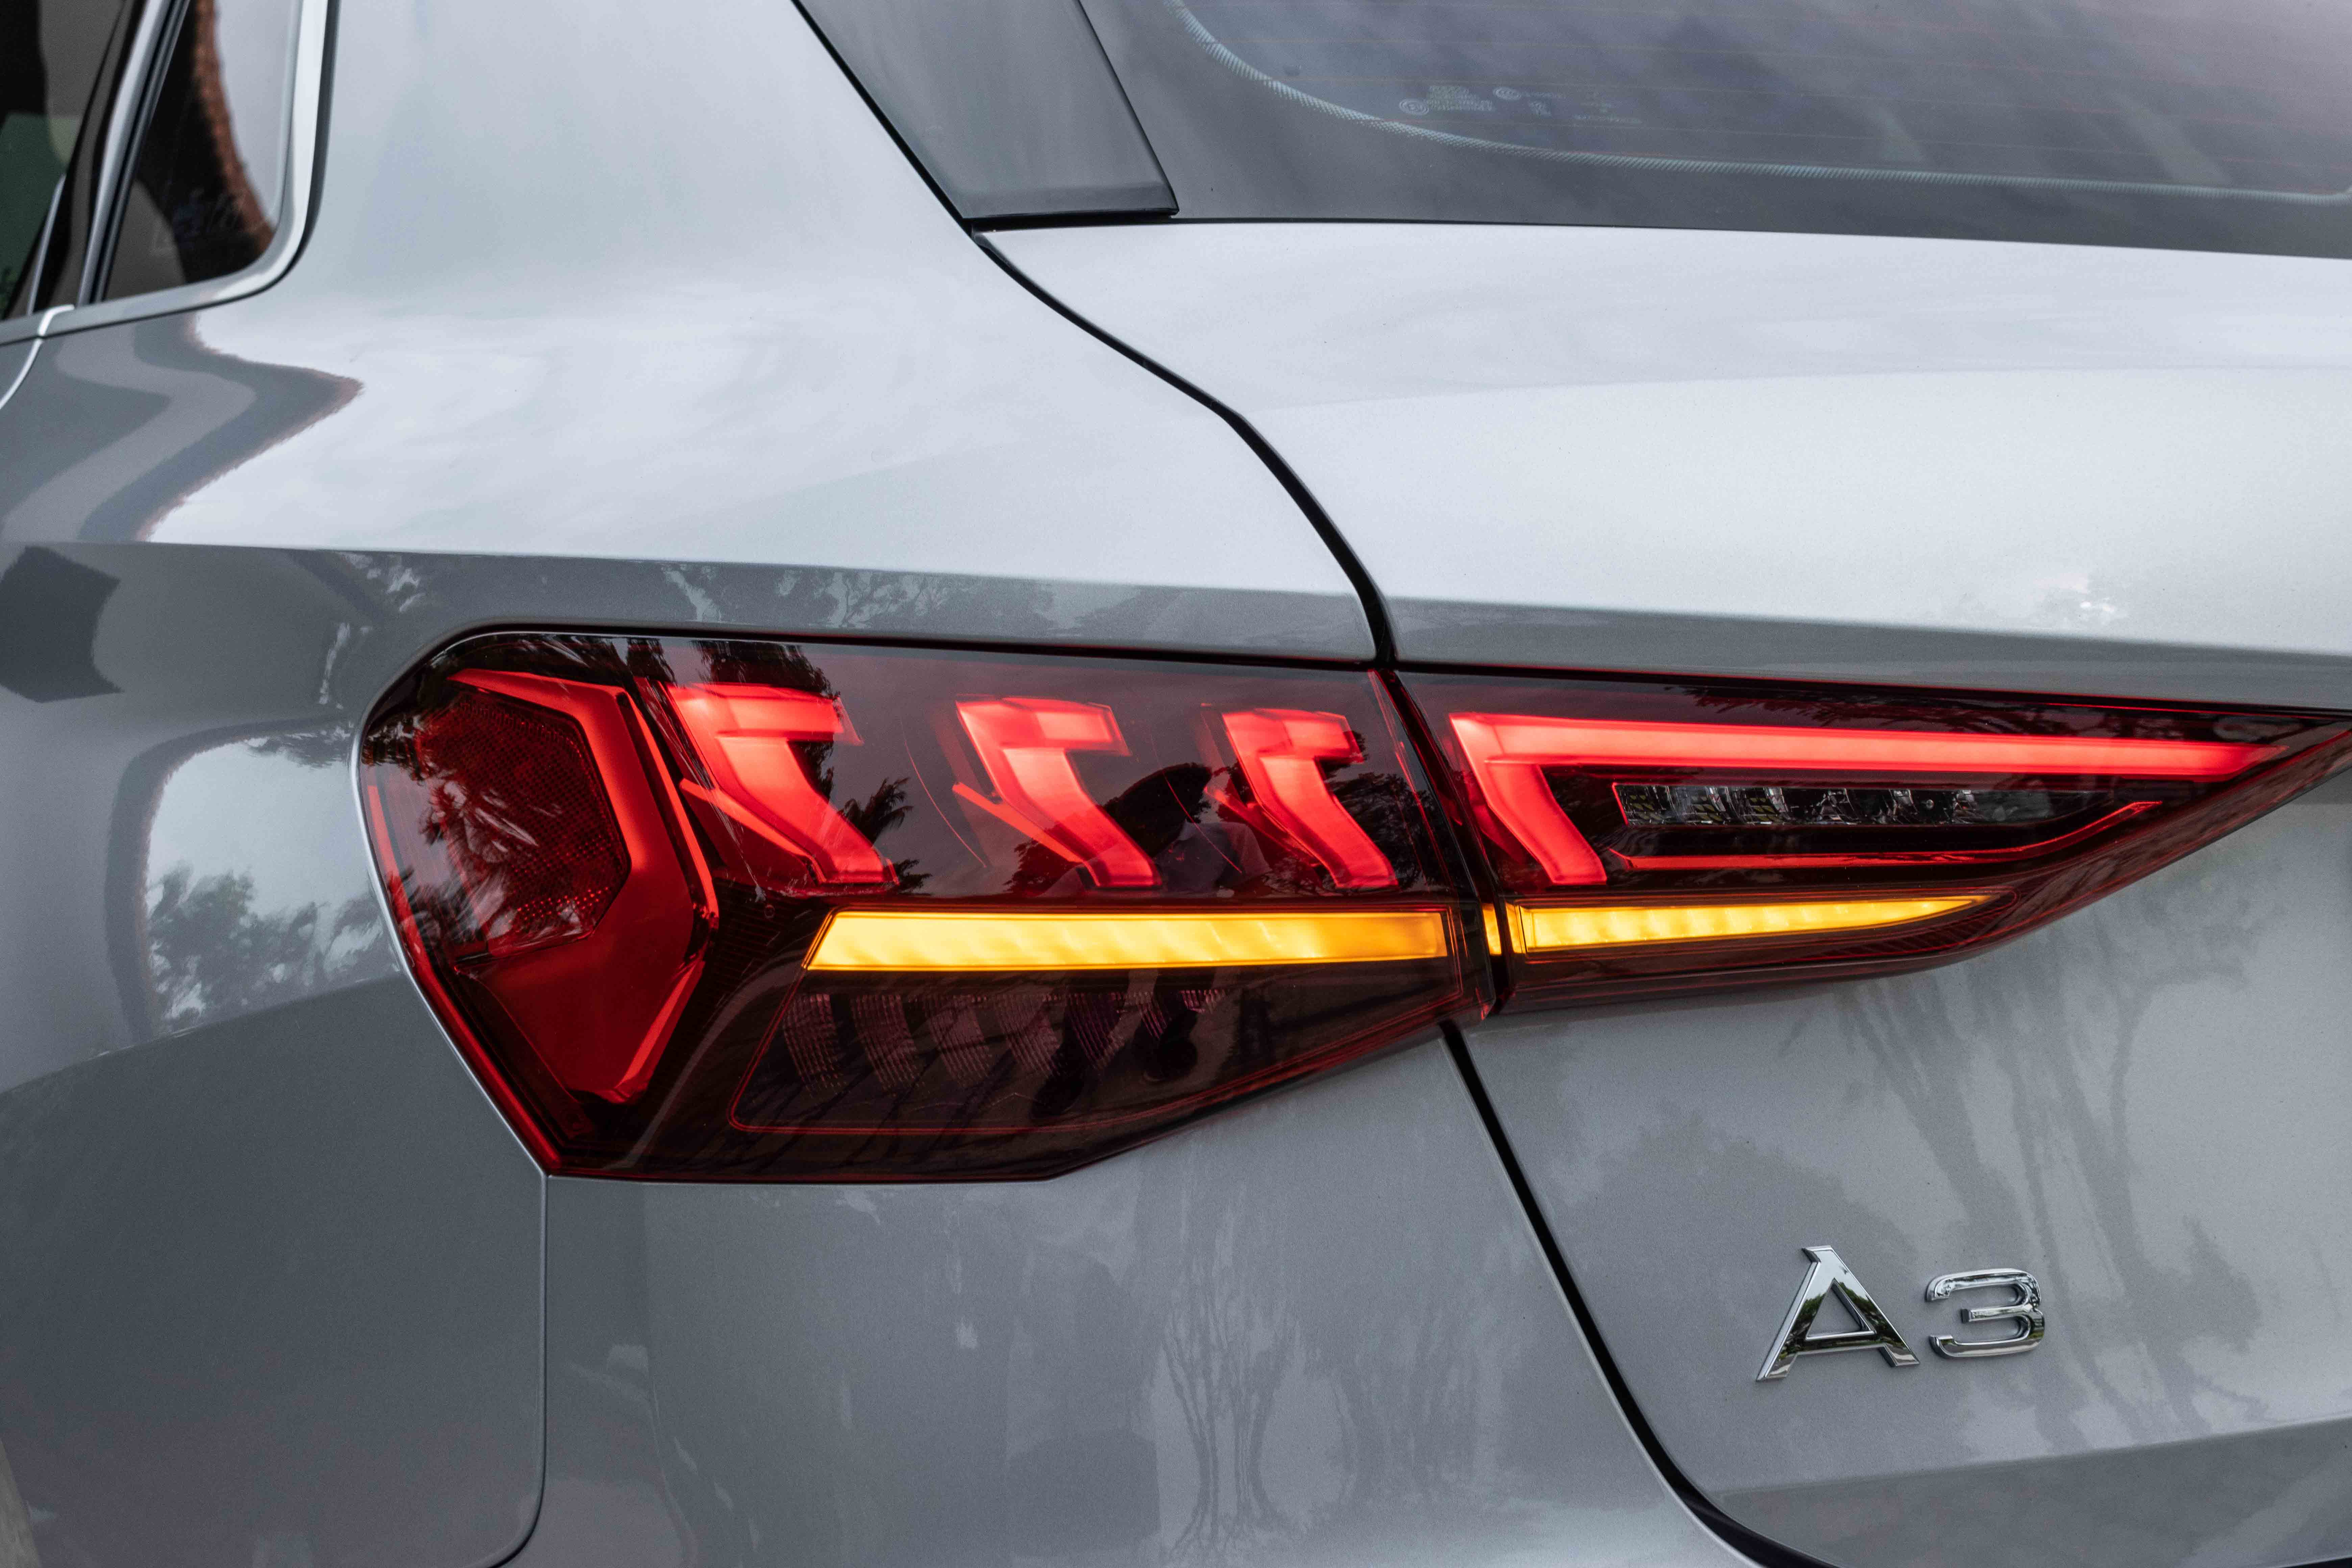 2022 Audi A3 Sportback 1.0 TFSI S tronic Singapore - Tail light detail